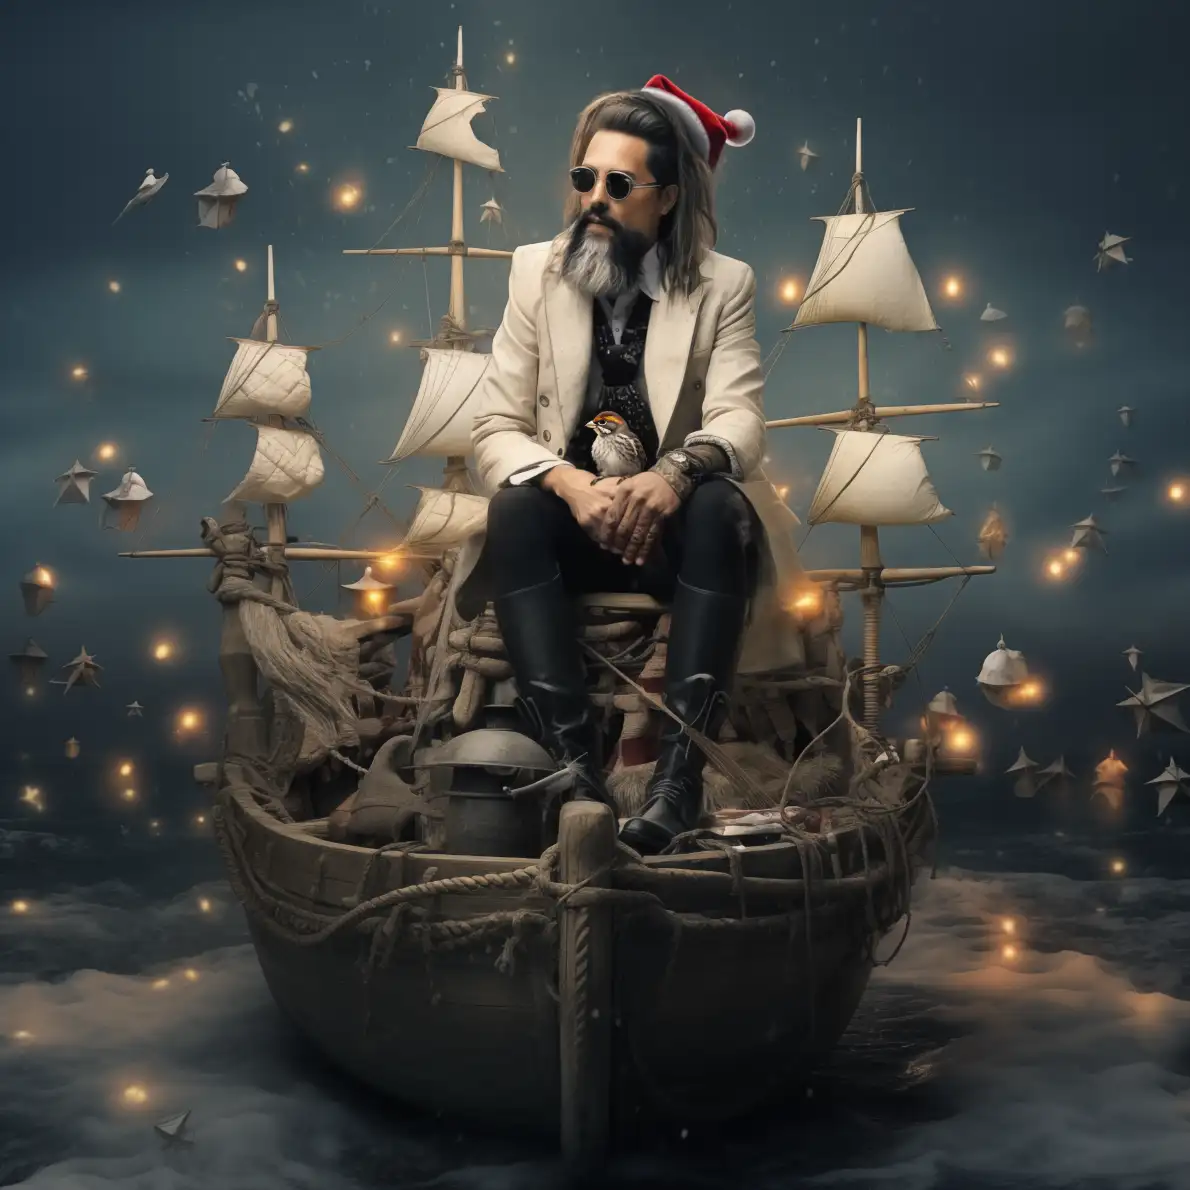 Schauspieler auf Schiff bzw, Piratenschiff für Bild KI-Weihnachtskalender, KI-Adventskalender bzw. KI-Kalender